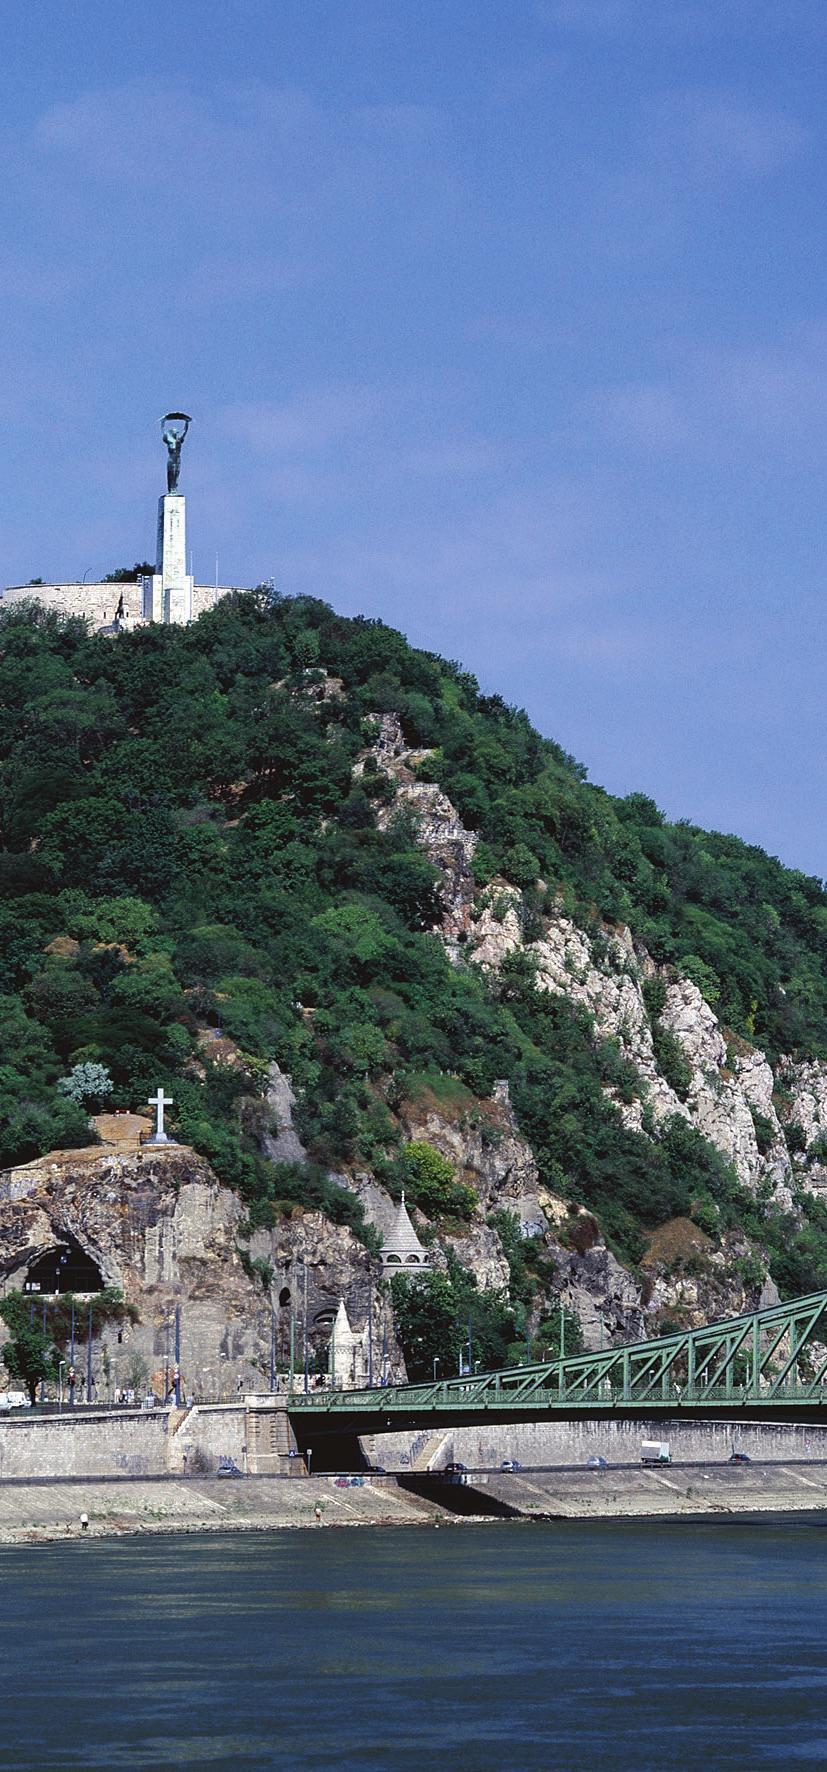 Hol találunk karsztbokorerdőket? Budapest környékén szép karsztbokorerdőket láthatunk a Hármashatár-hegyen, az Apáthy-szikla környékén, vagy a Remete-szurdok sziklafalai mellett.